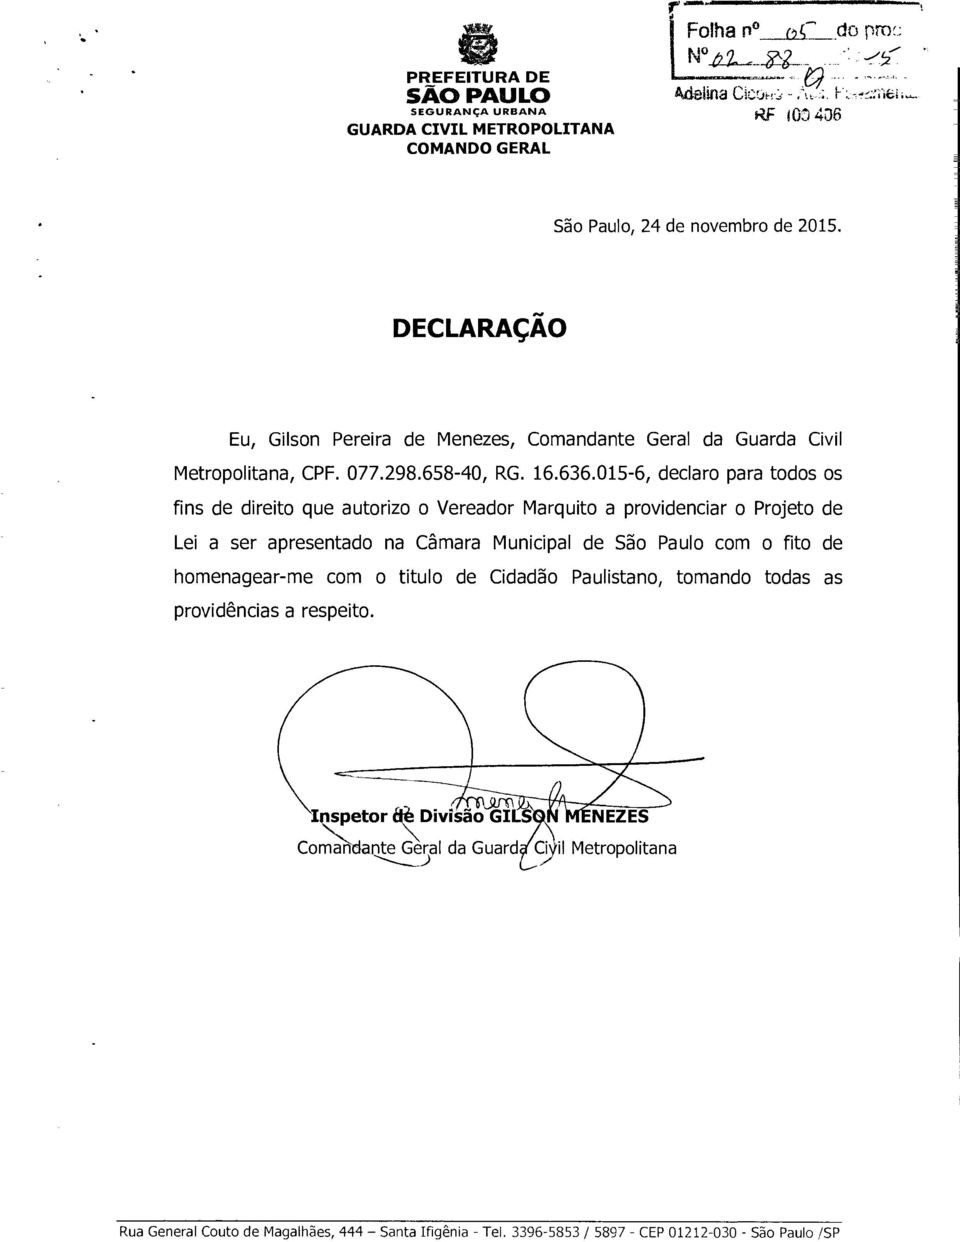 015-6, declaro para todos os fins de direito que autorizo o Vereador Marquito a providenciar o Projeto de Lei a ser apresentado na Câmara Municipal de São Paulo com o fito de